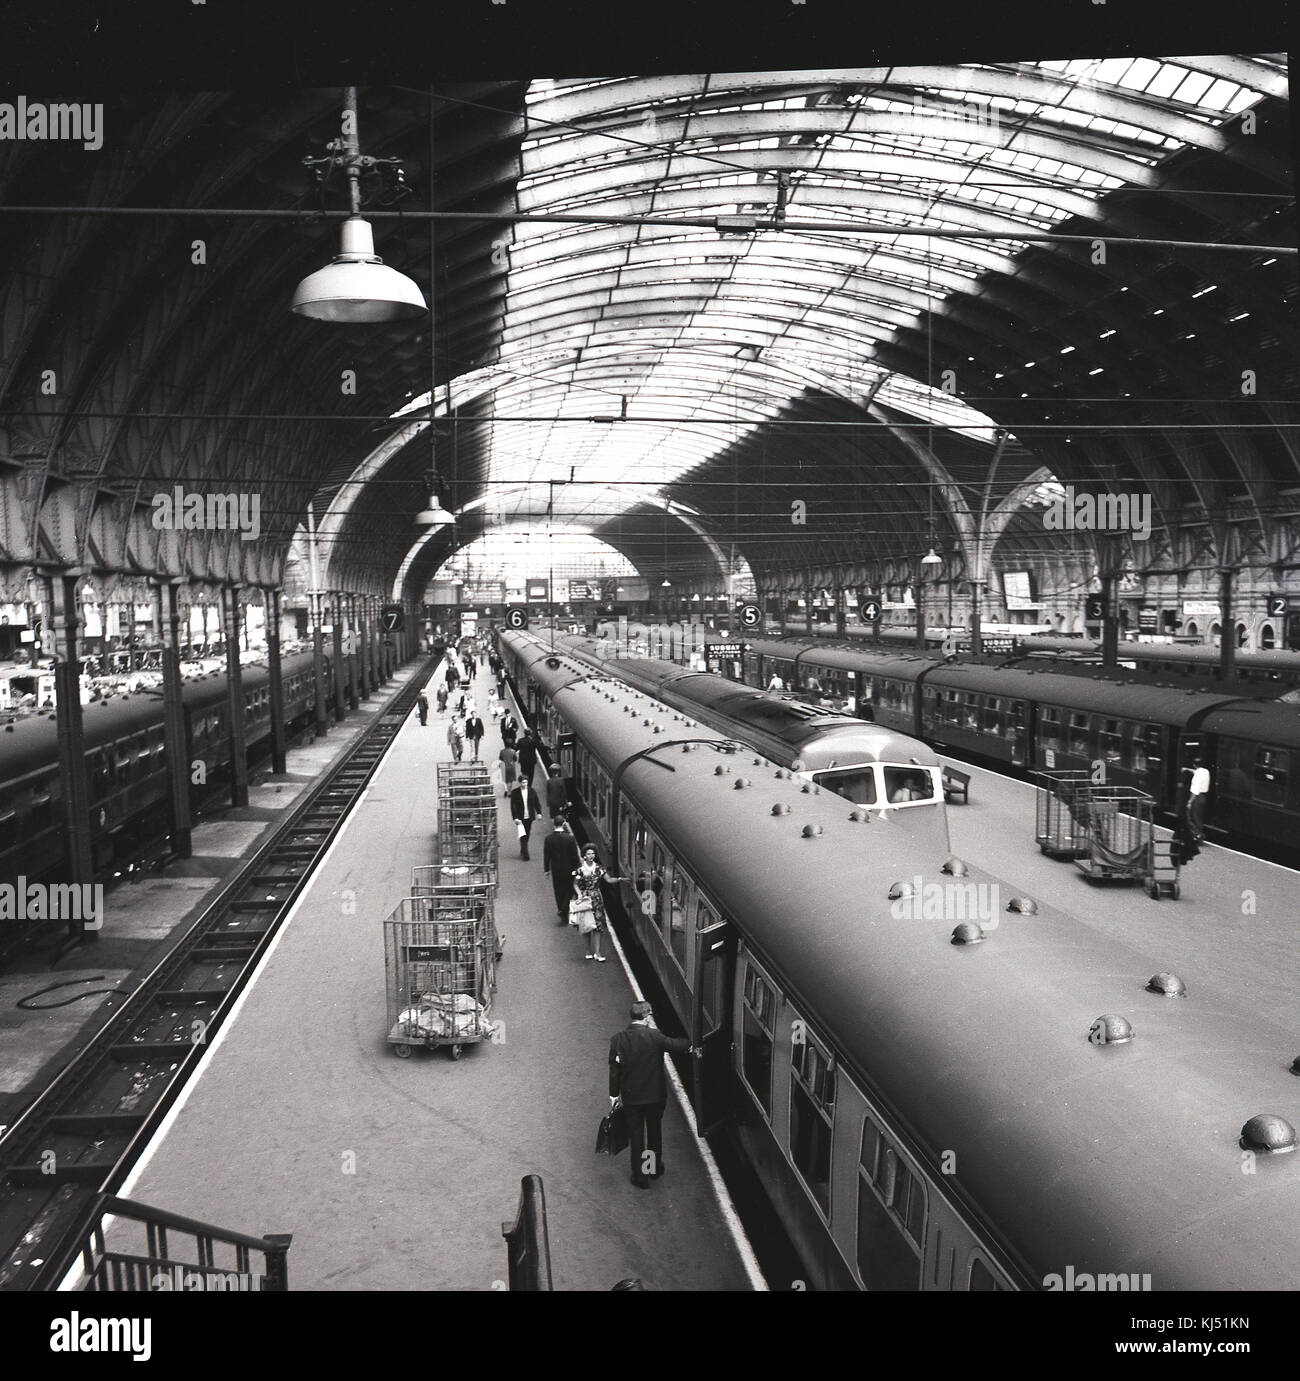 1950er Jahre, historische Bild zeigt die viktorianischen Bahnhof mit glasierten Dach im Londoner Bahnhof Paddington vergossen, mit Züge warten auf boarding Passagiere an Plattformen, die Praed Street, London, England, UK. Stockfoto